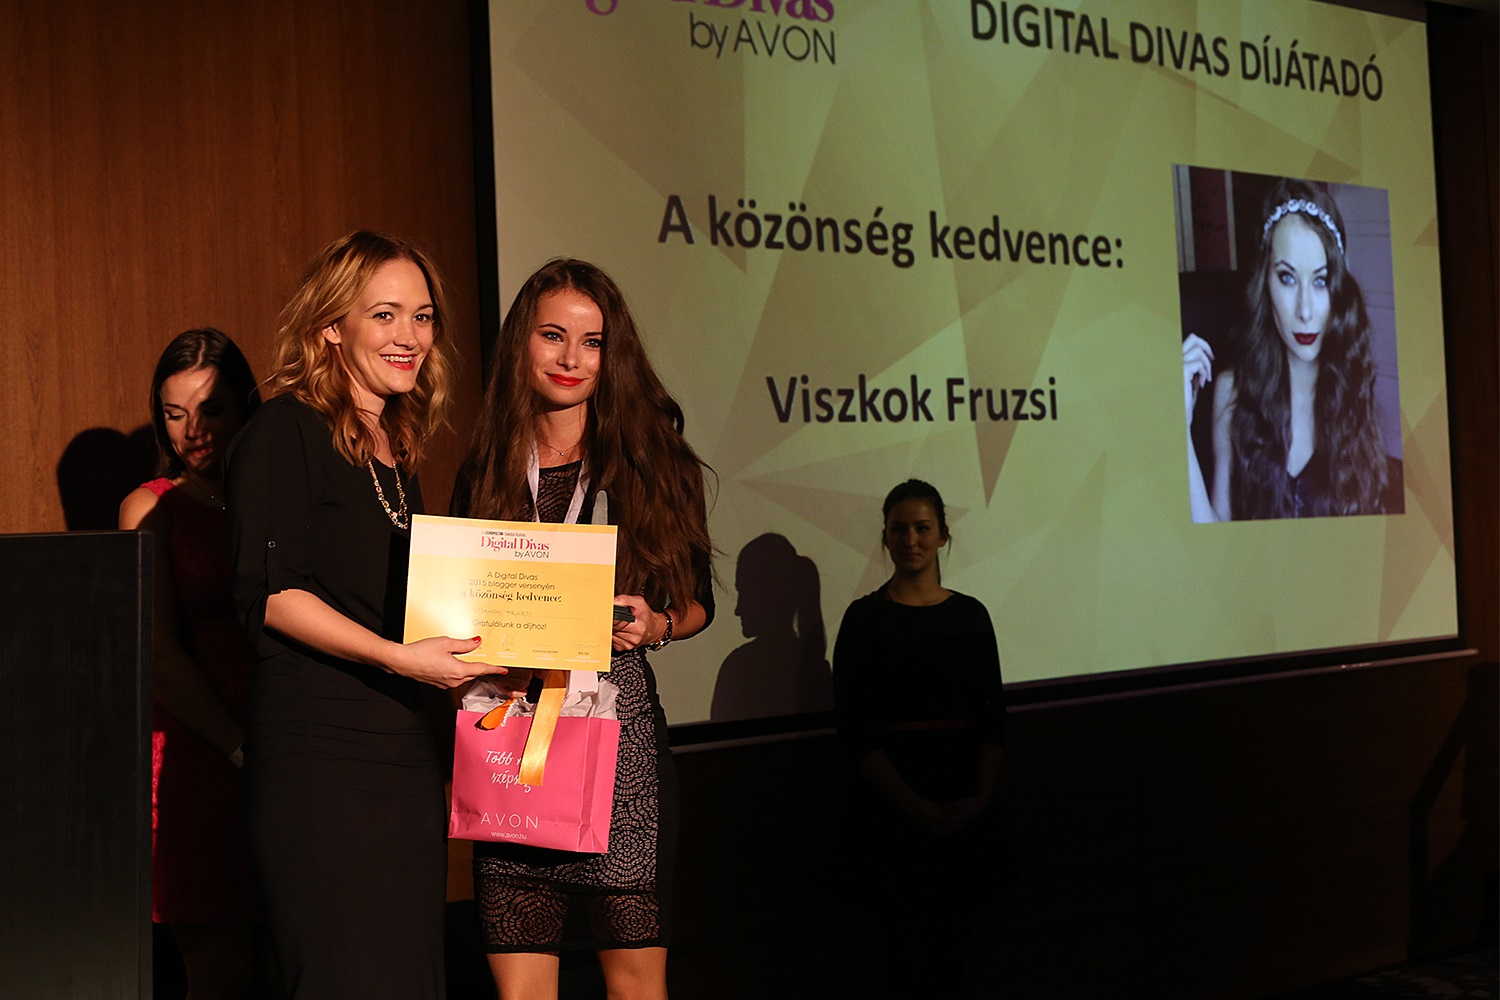 Digital Divas díjátadó